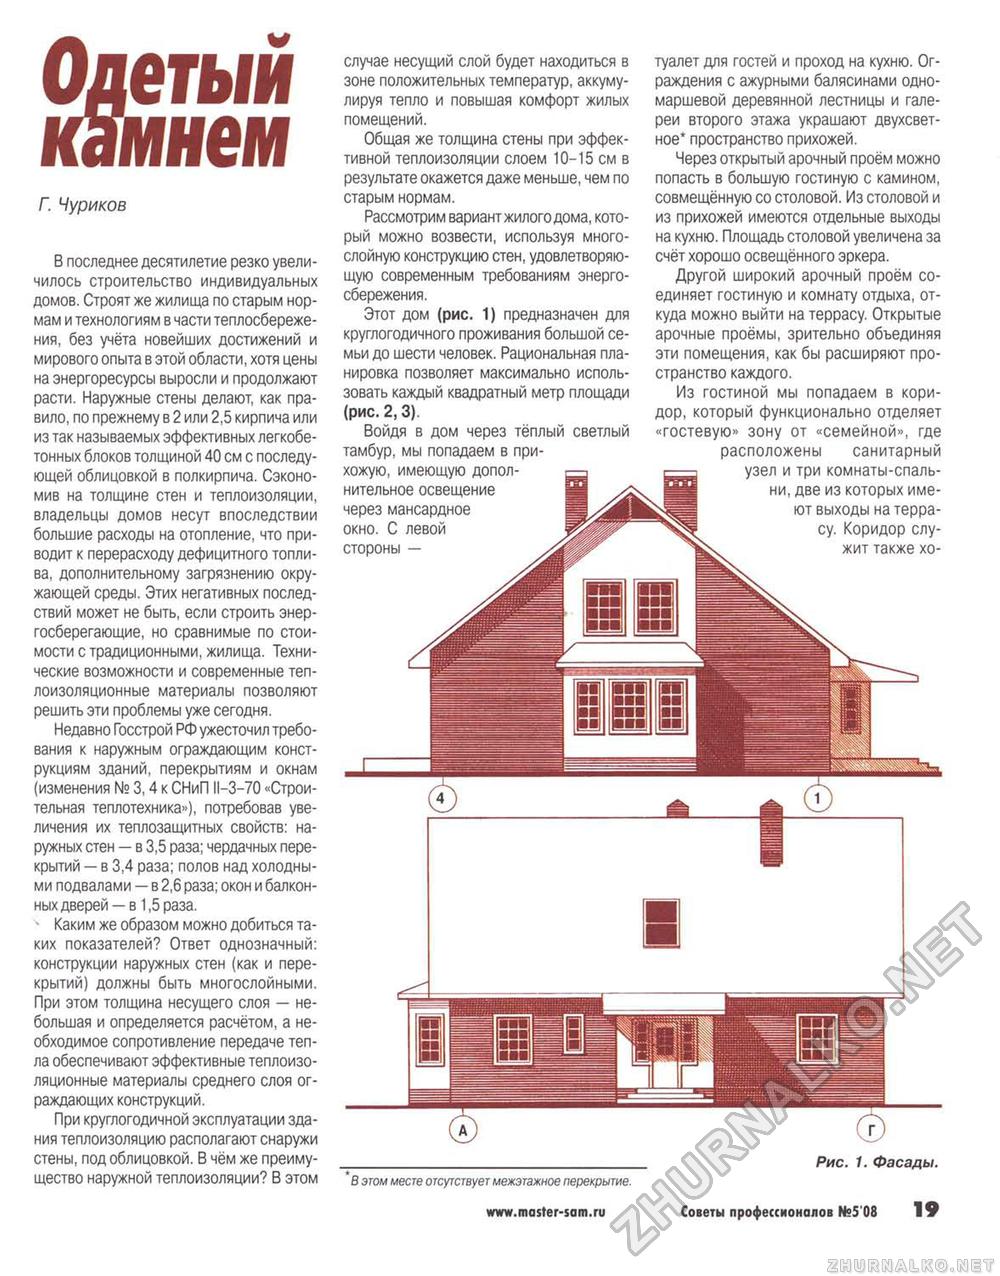 Советы профессионалов 2008-05, страница 19